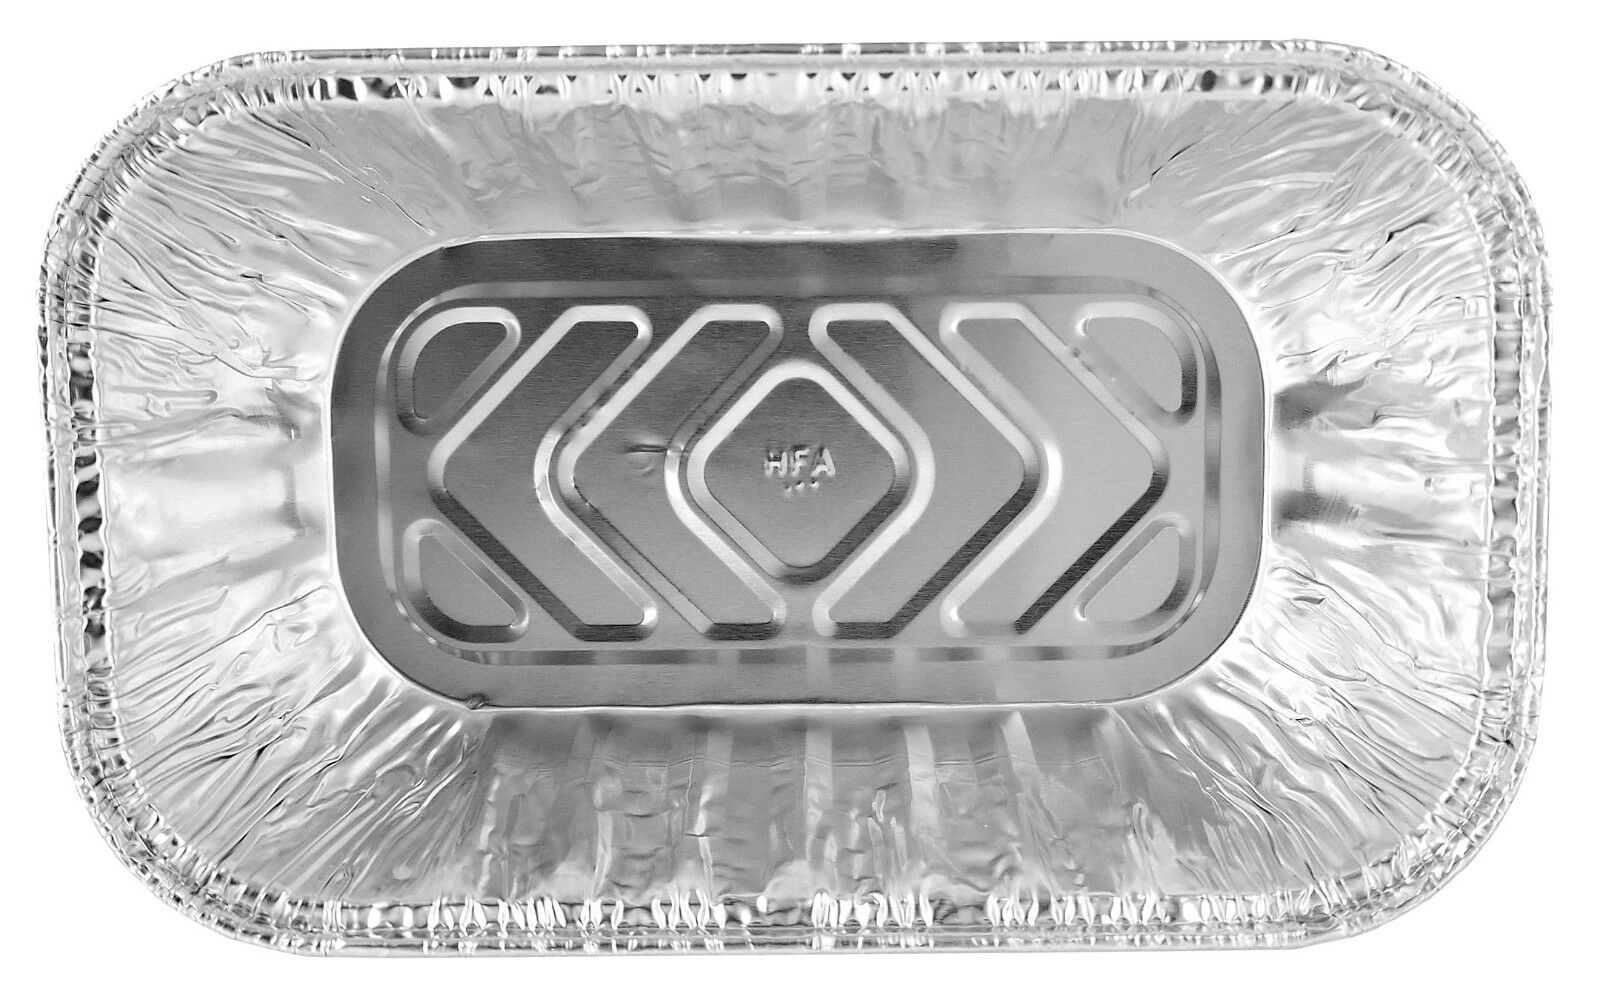 Plastic lid for D & W Fine Pack Aluminum Foil 1 lb. Mini Loaf Pan #PL-15430